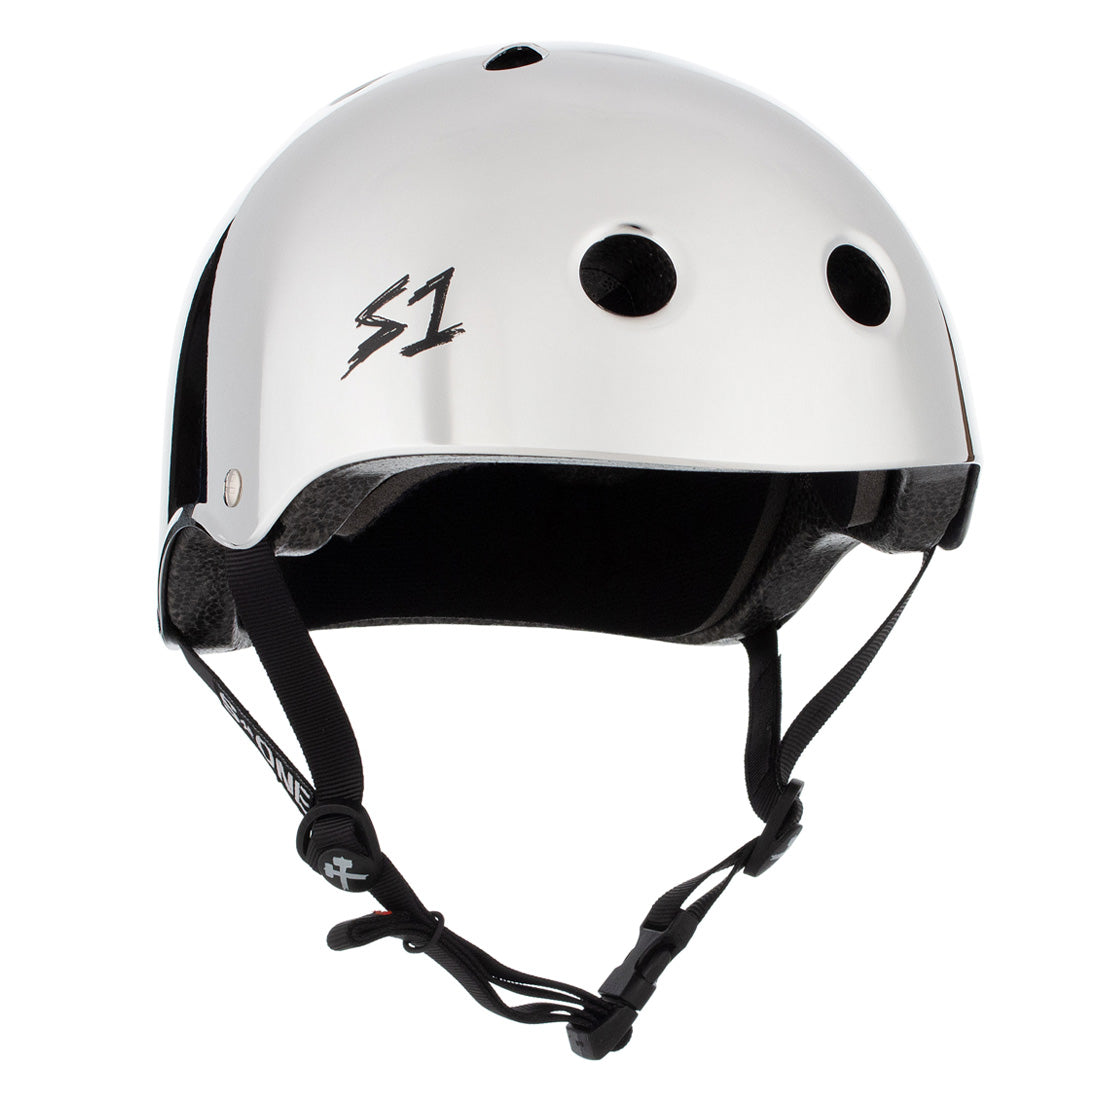 S-One Lifer Helmet - Silver Mirror Helmet Helmets